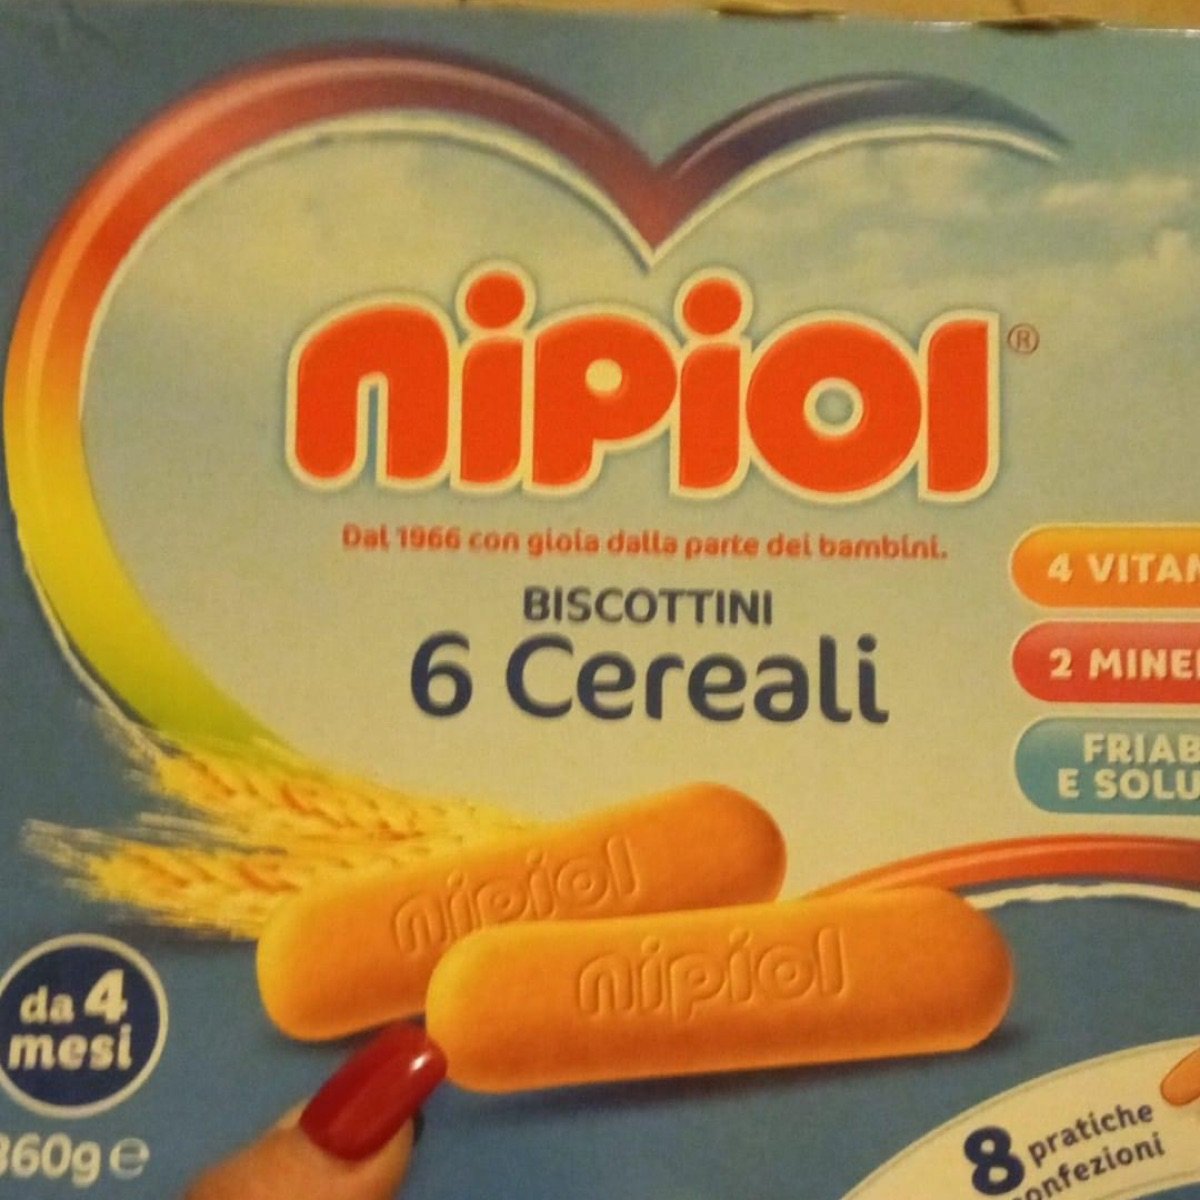 Nipiol Biscottini sei cereali Review